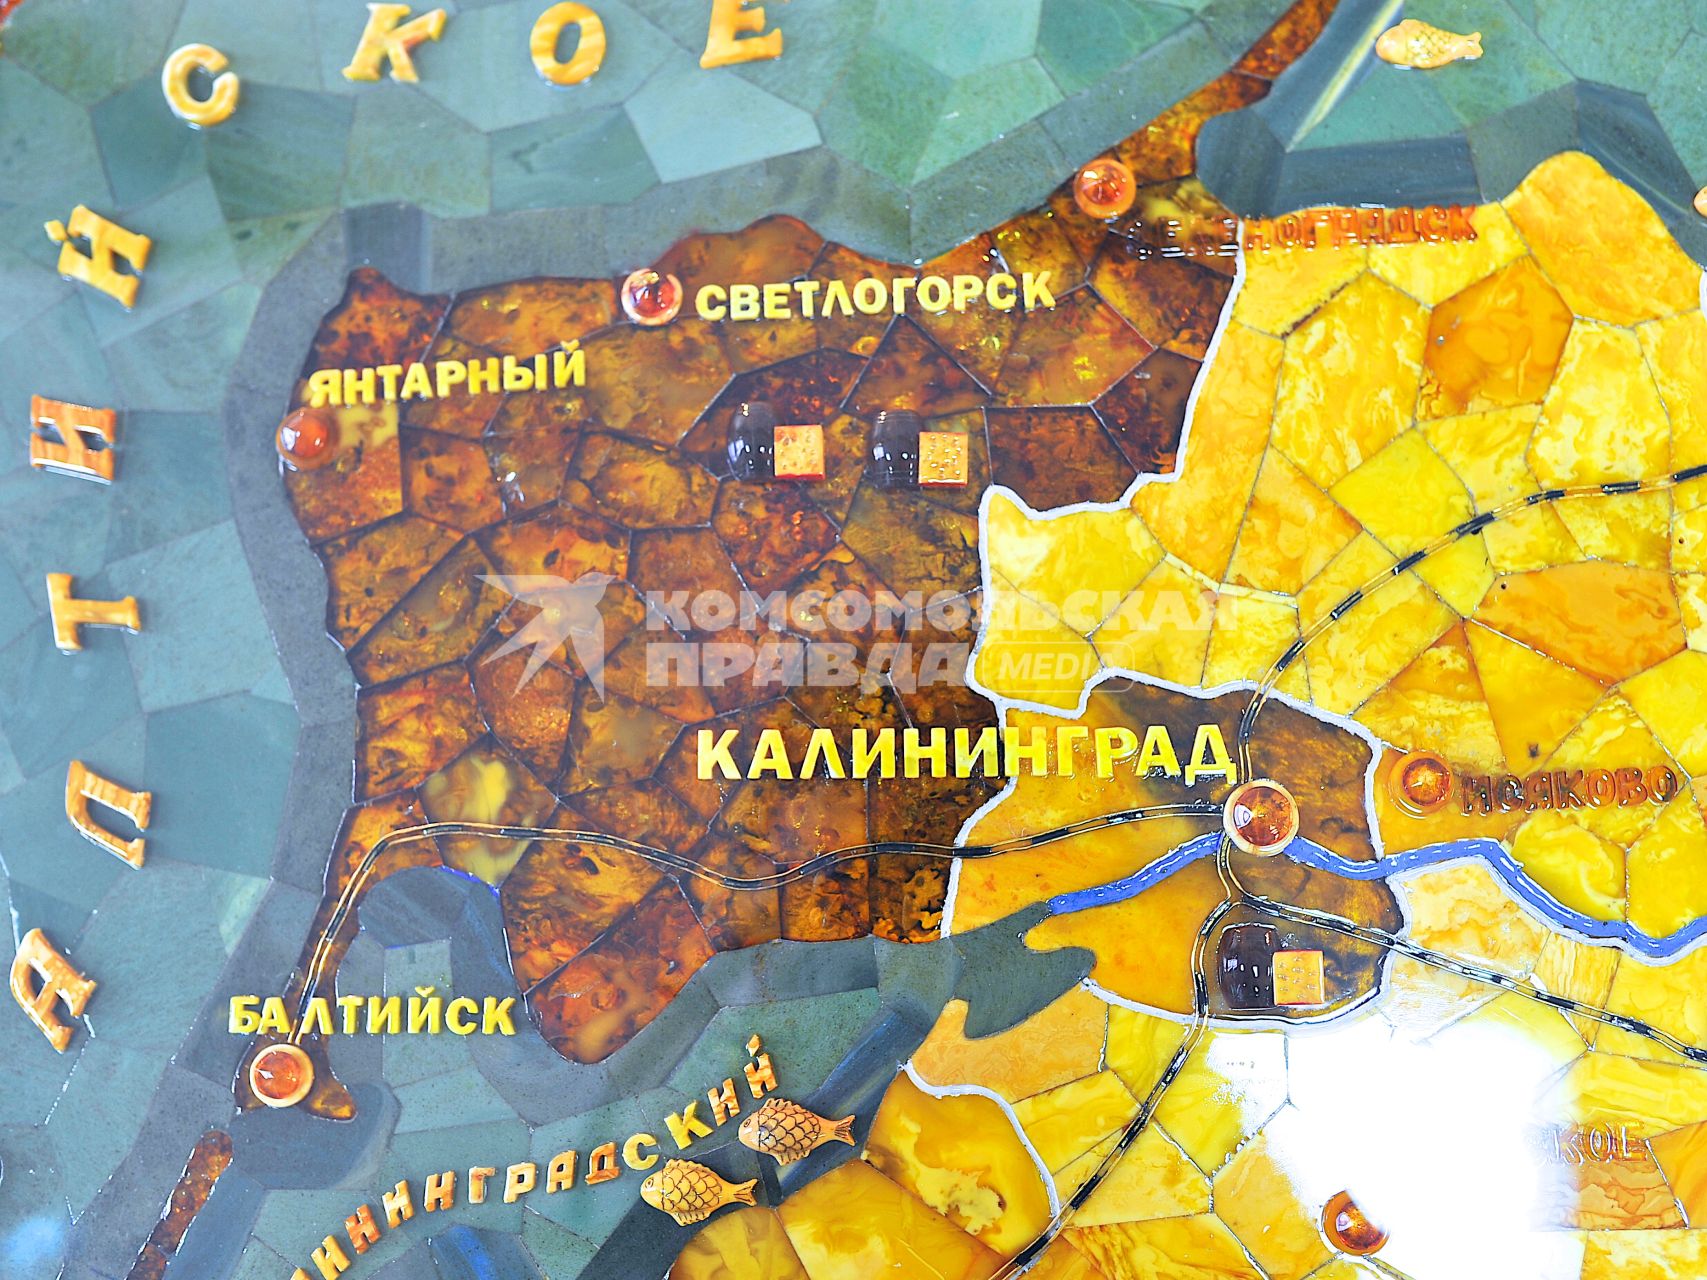 Калининградская область. Карта Калининградской области, выполненная в янтаре.